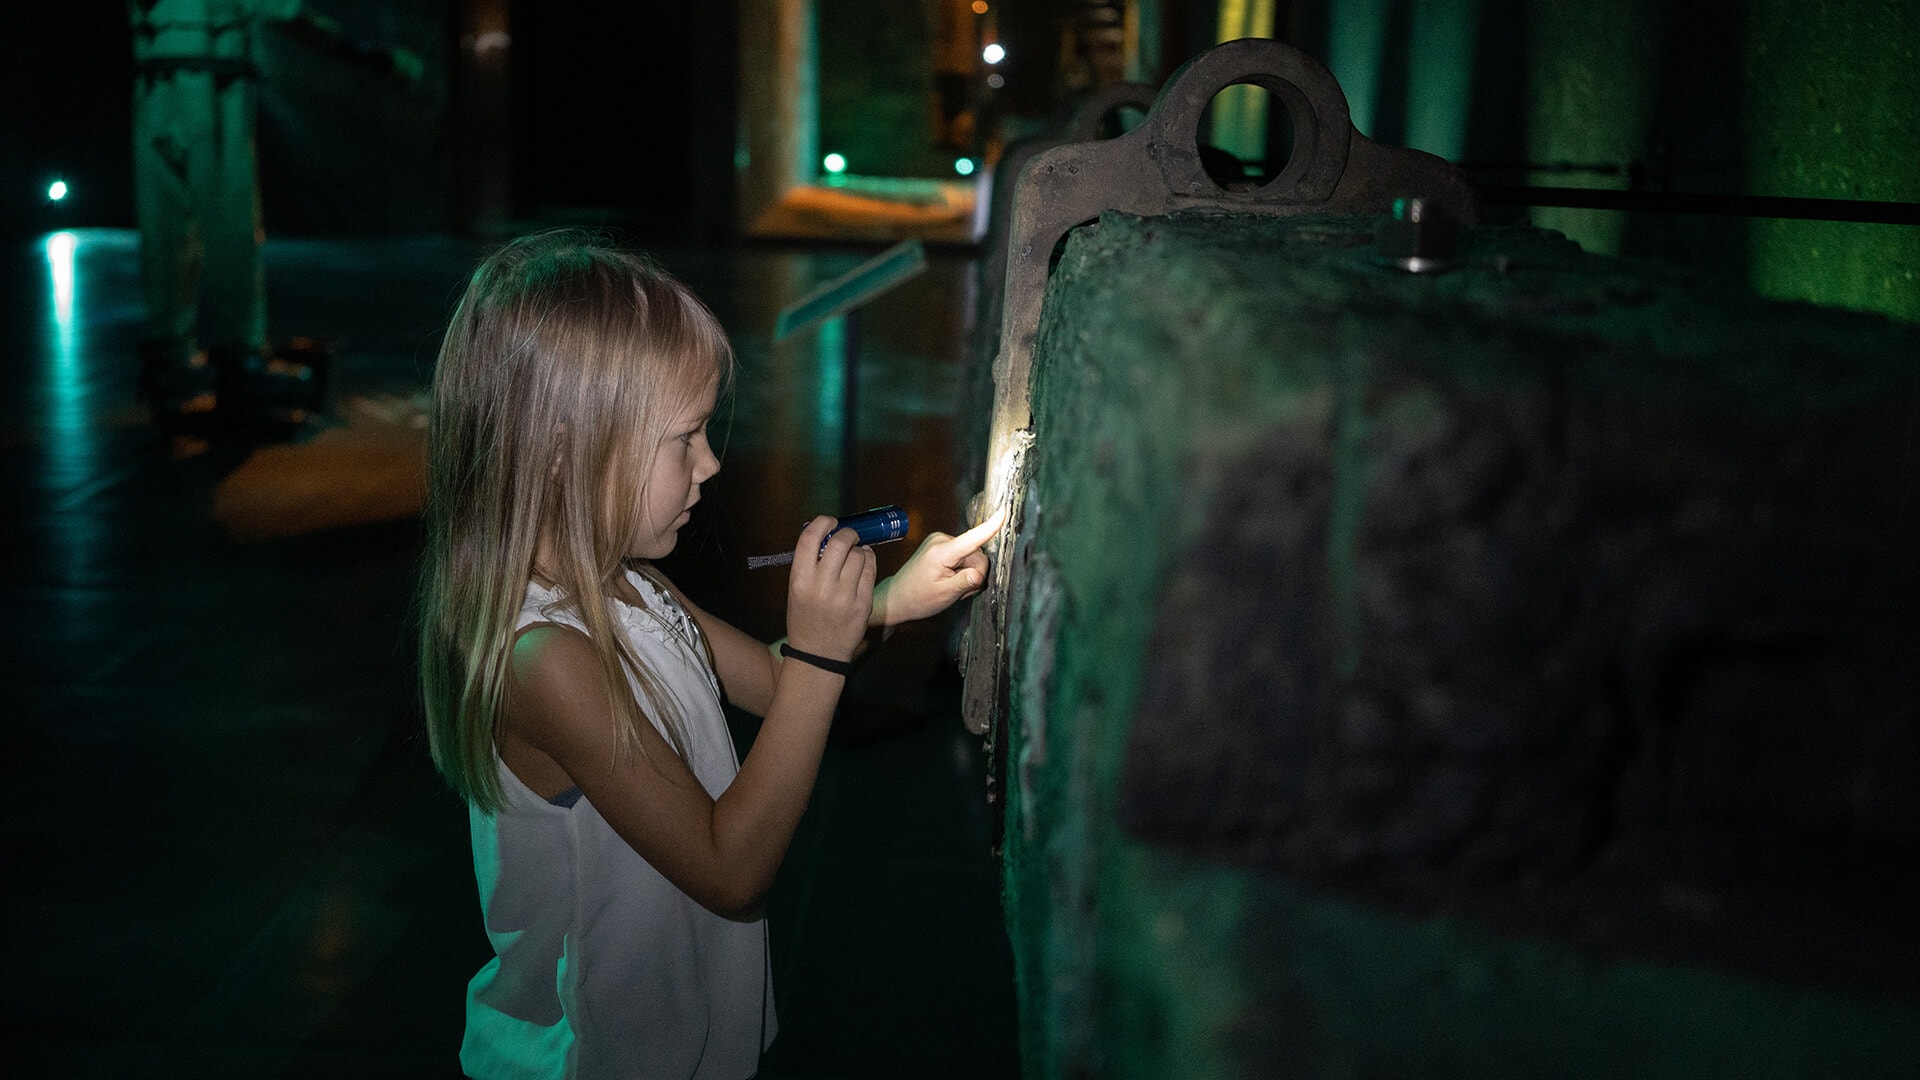 Lille pige går på opdagelse i strandingsmuseets genstande med en lommelygte